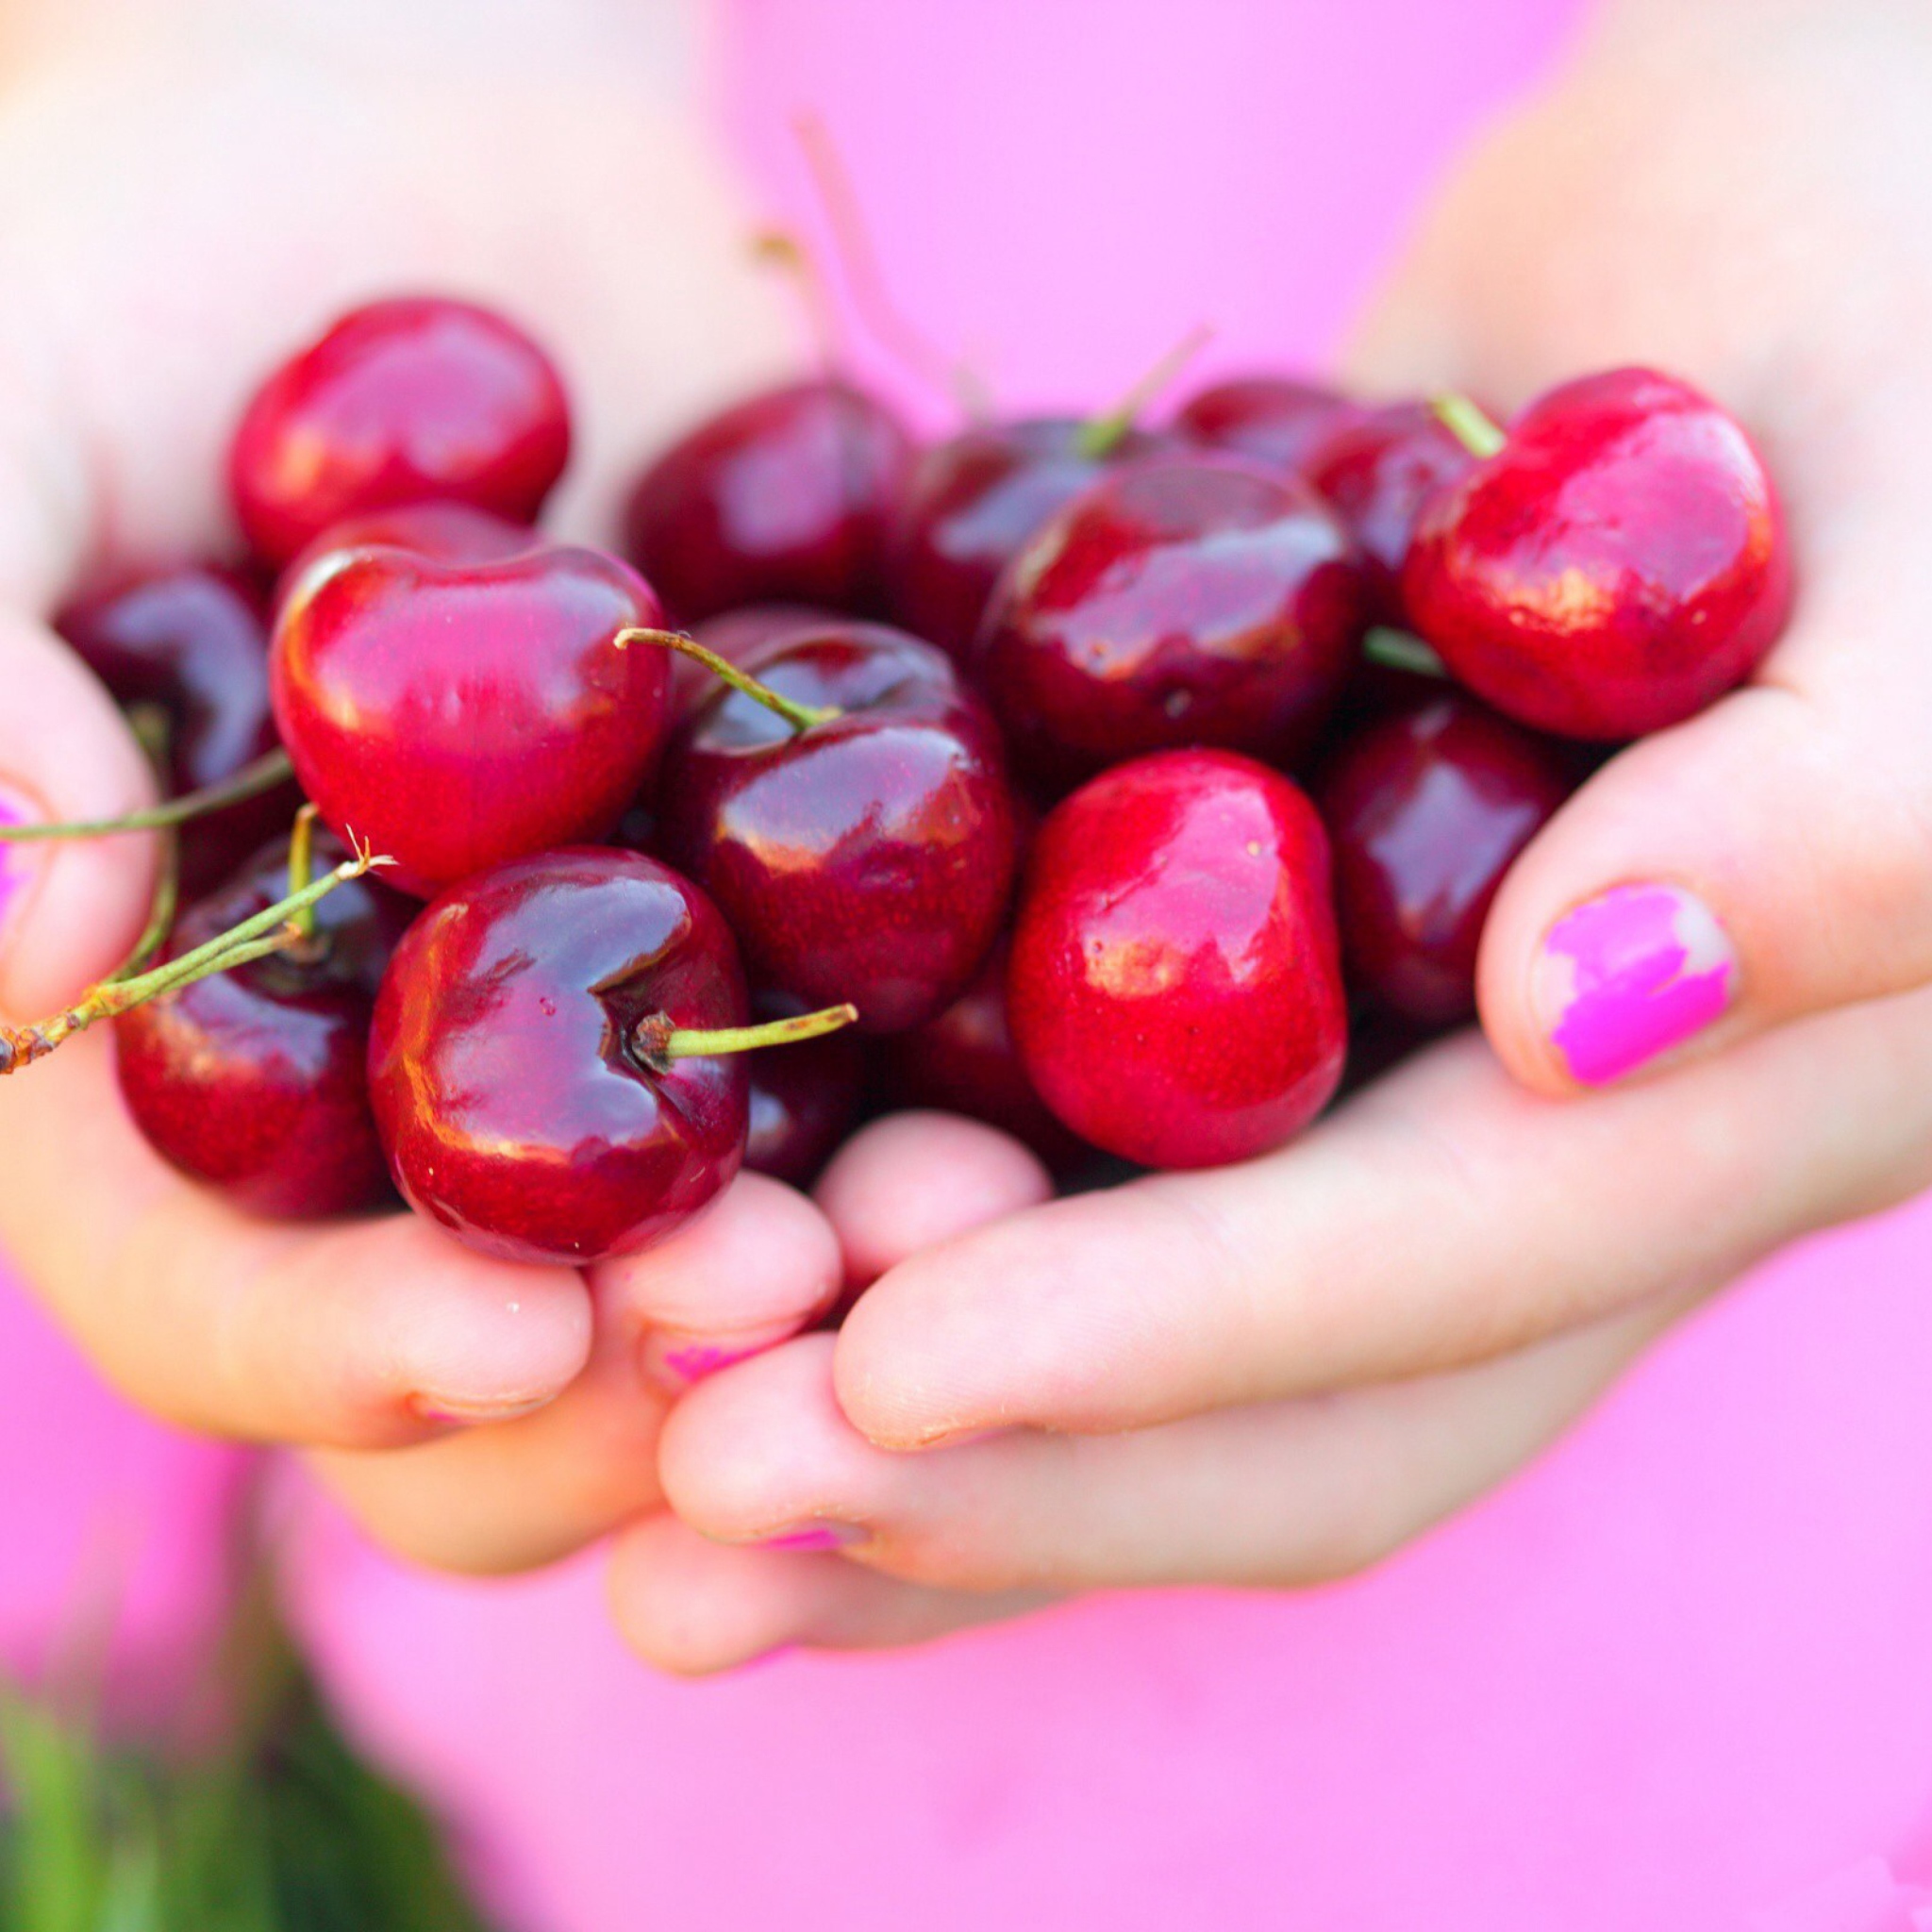 Обои Cherries In Hands 2048x2048